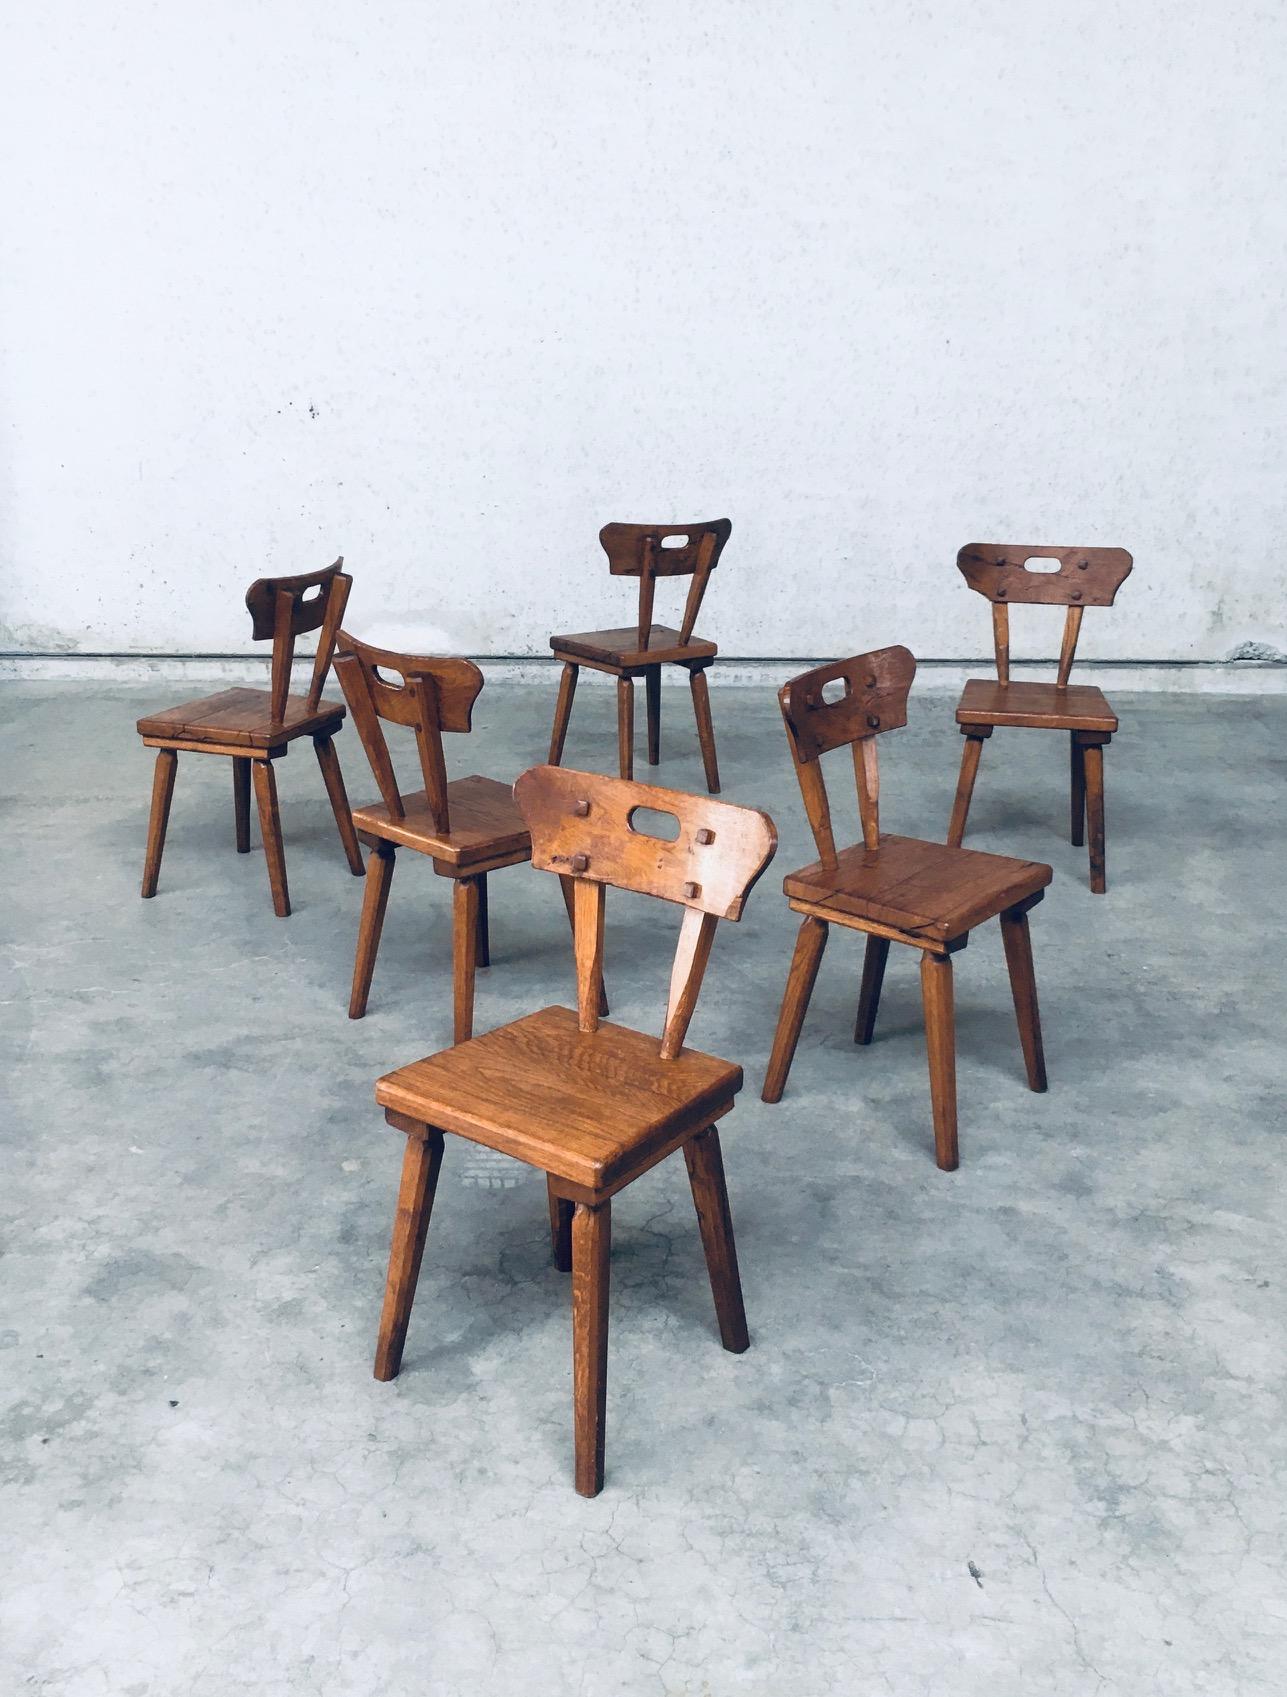 Chêne Ensemble de chaises de salle à manger en Oak rustique, France, années 1940, fabriqué à la main selon les principes de l'art populaire en vente